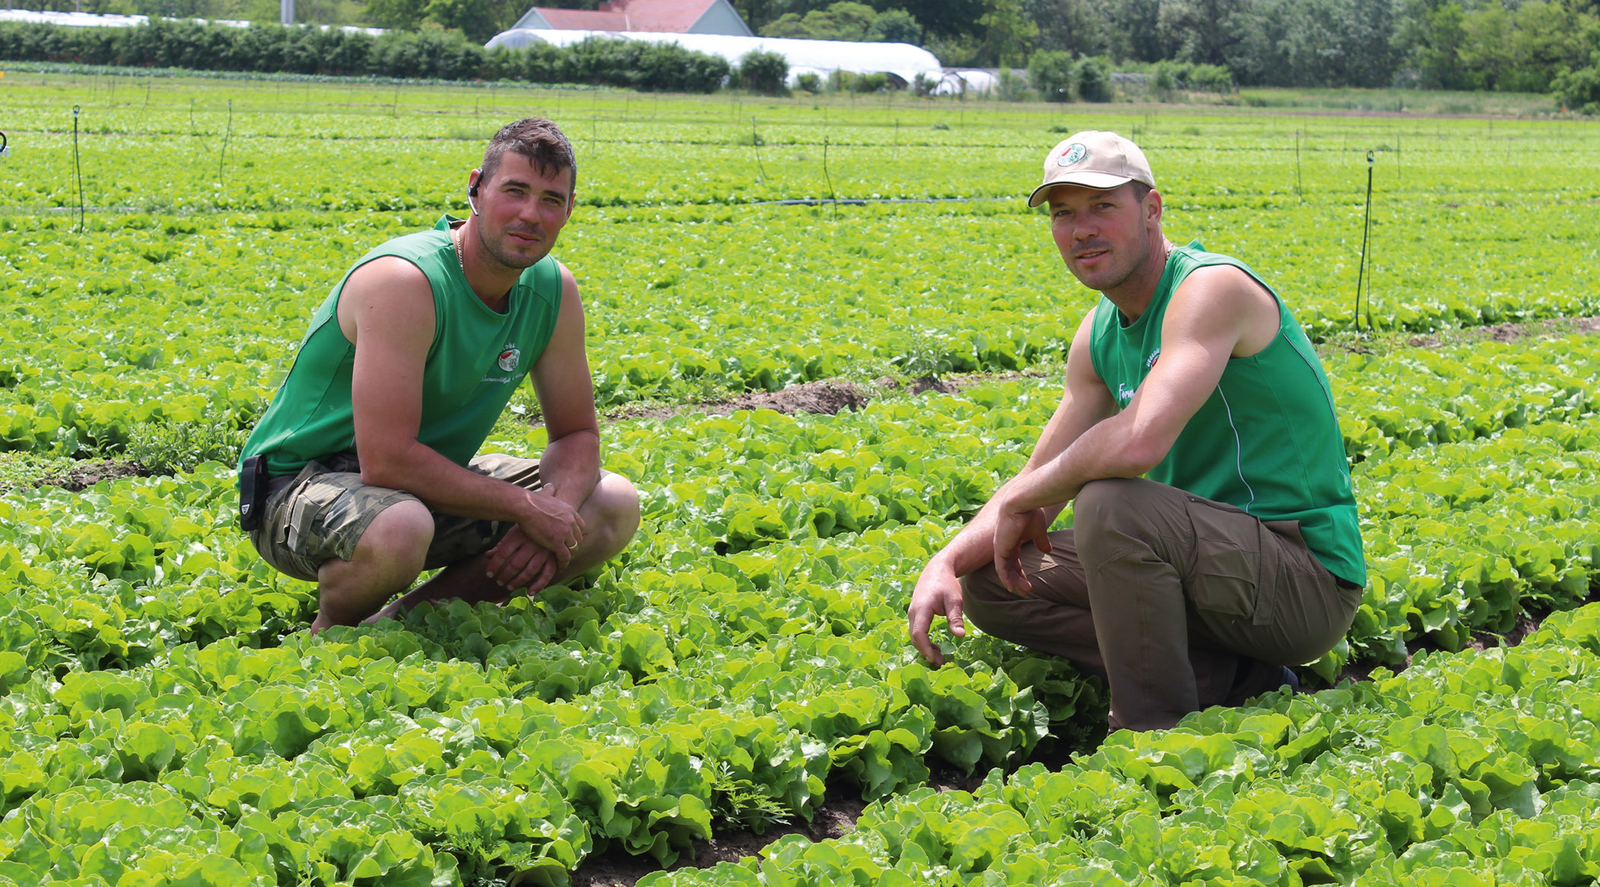 A Hegedűs fivérek termesztik hazánkban a legtöbb frisspiaci fejes salátát